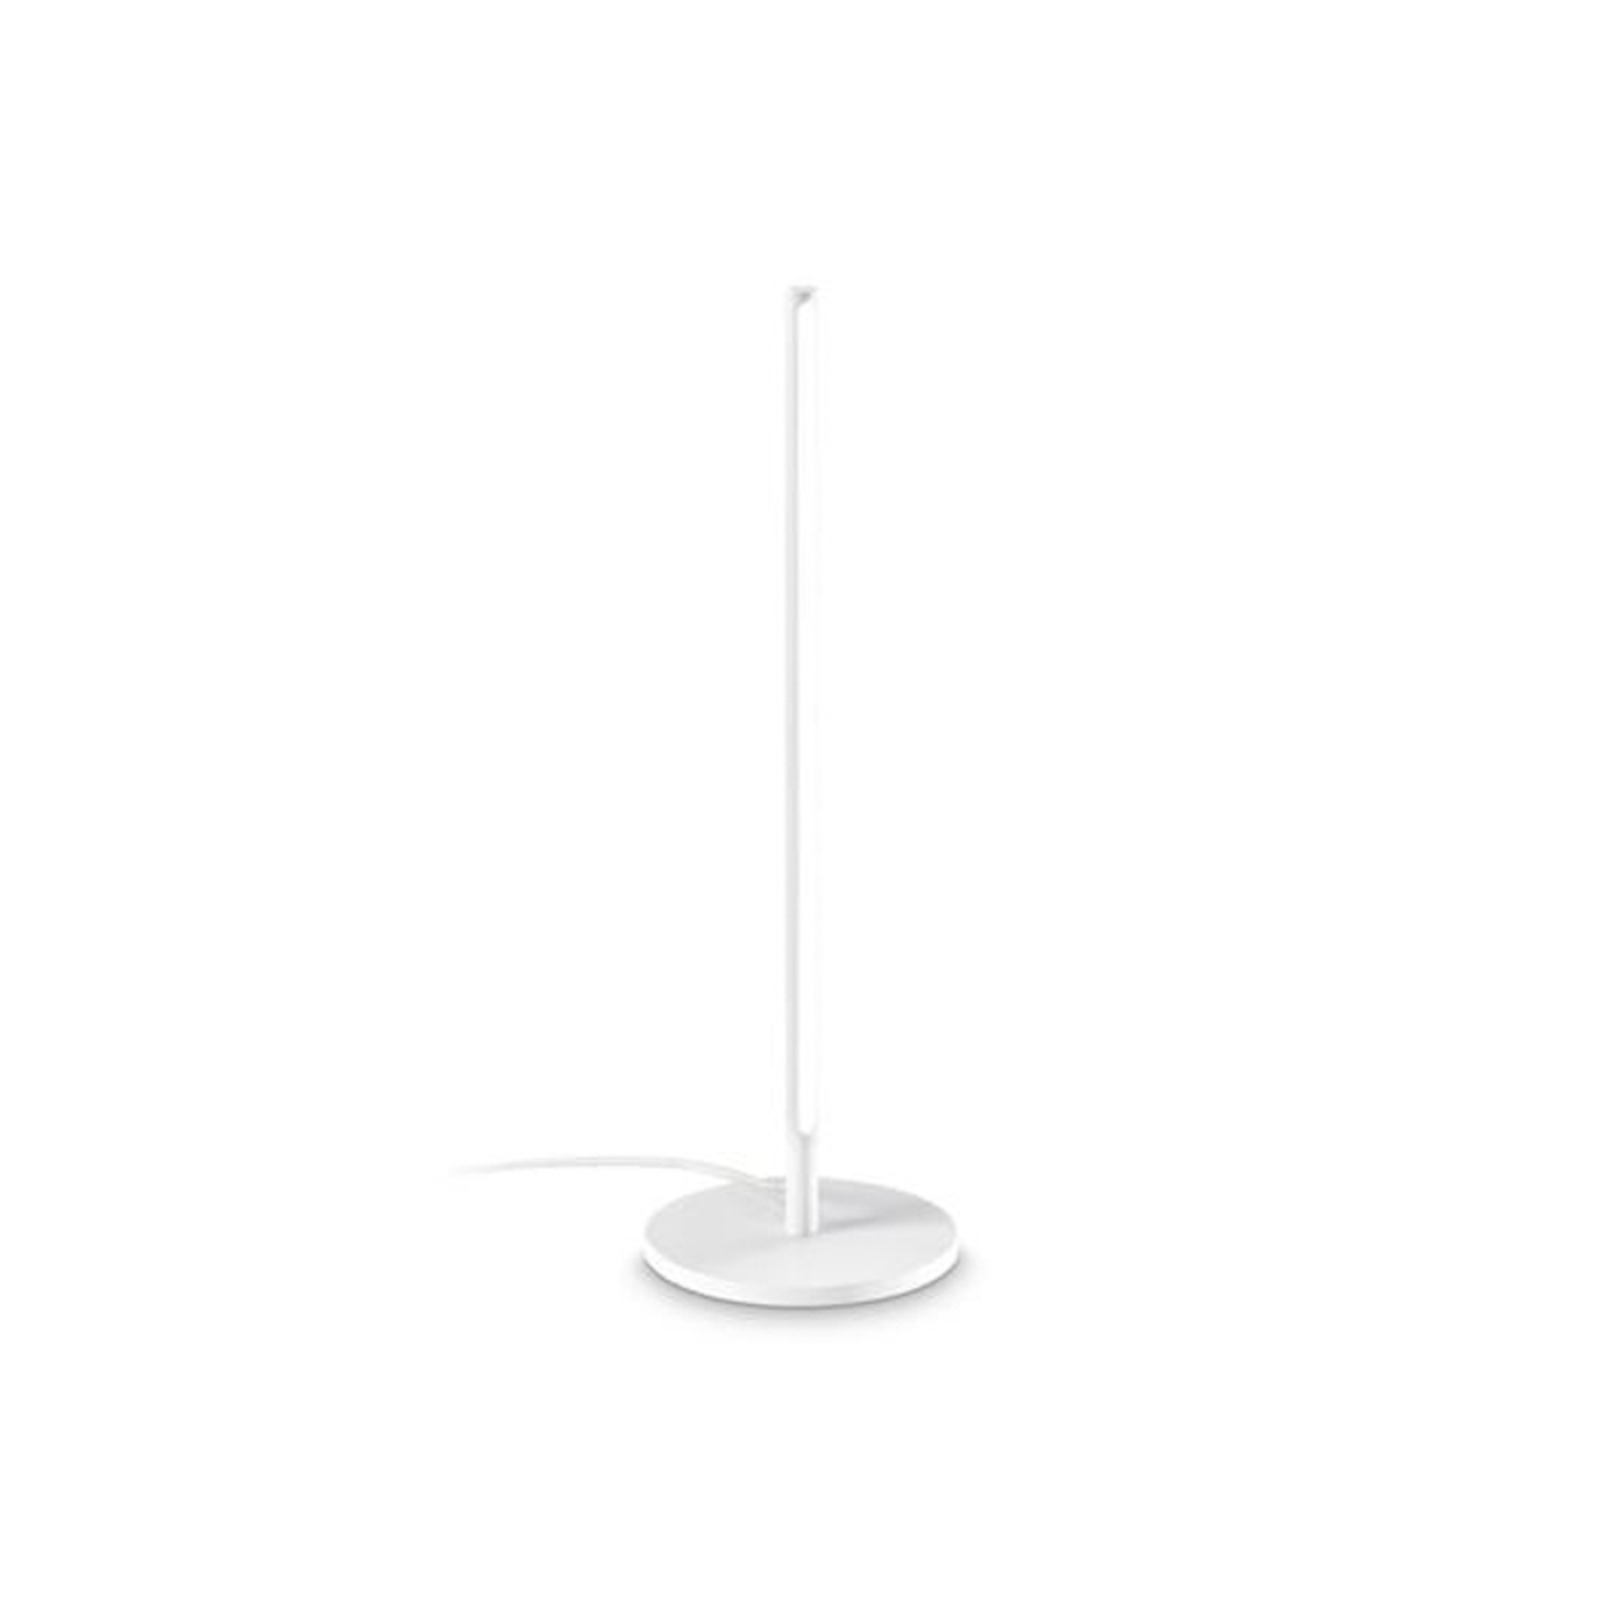 Ideal Lux Filo LED tafellamp, wit, aluminium, hoogte 47 cm